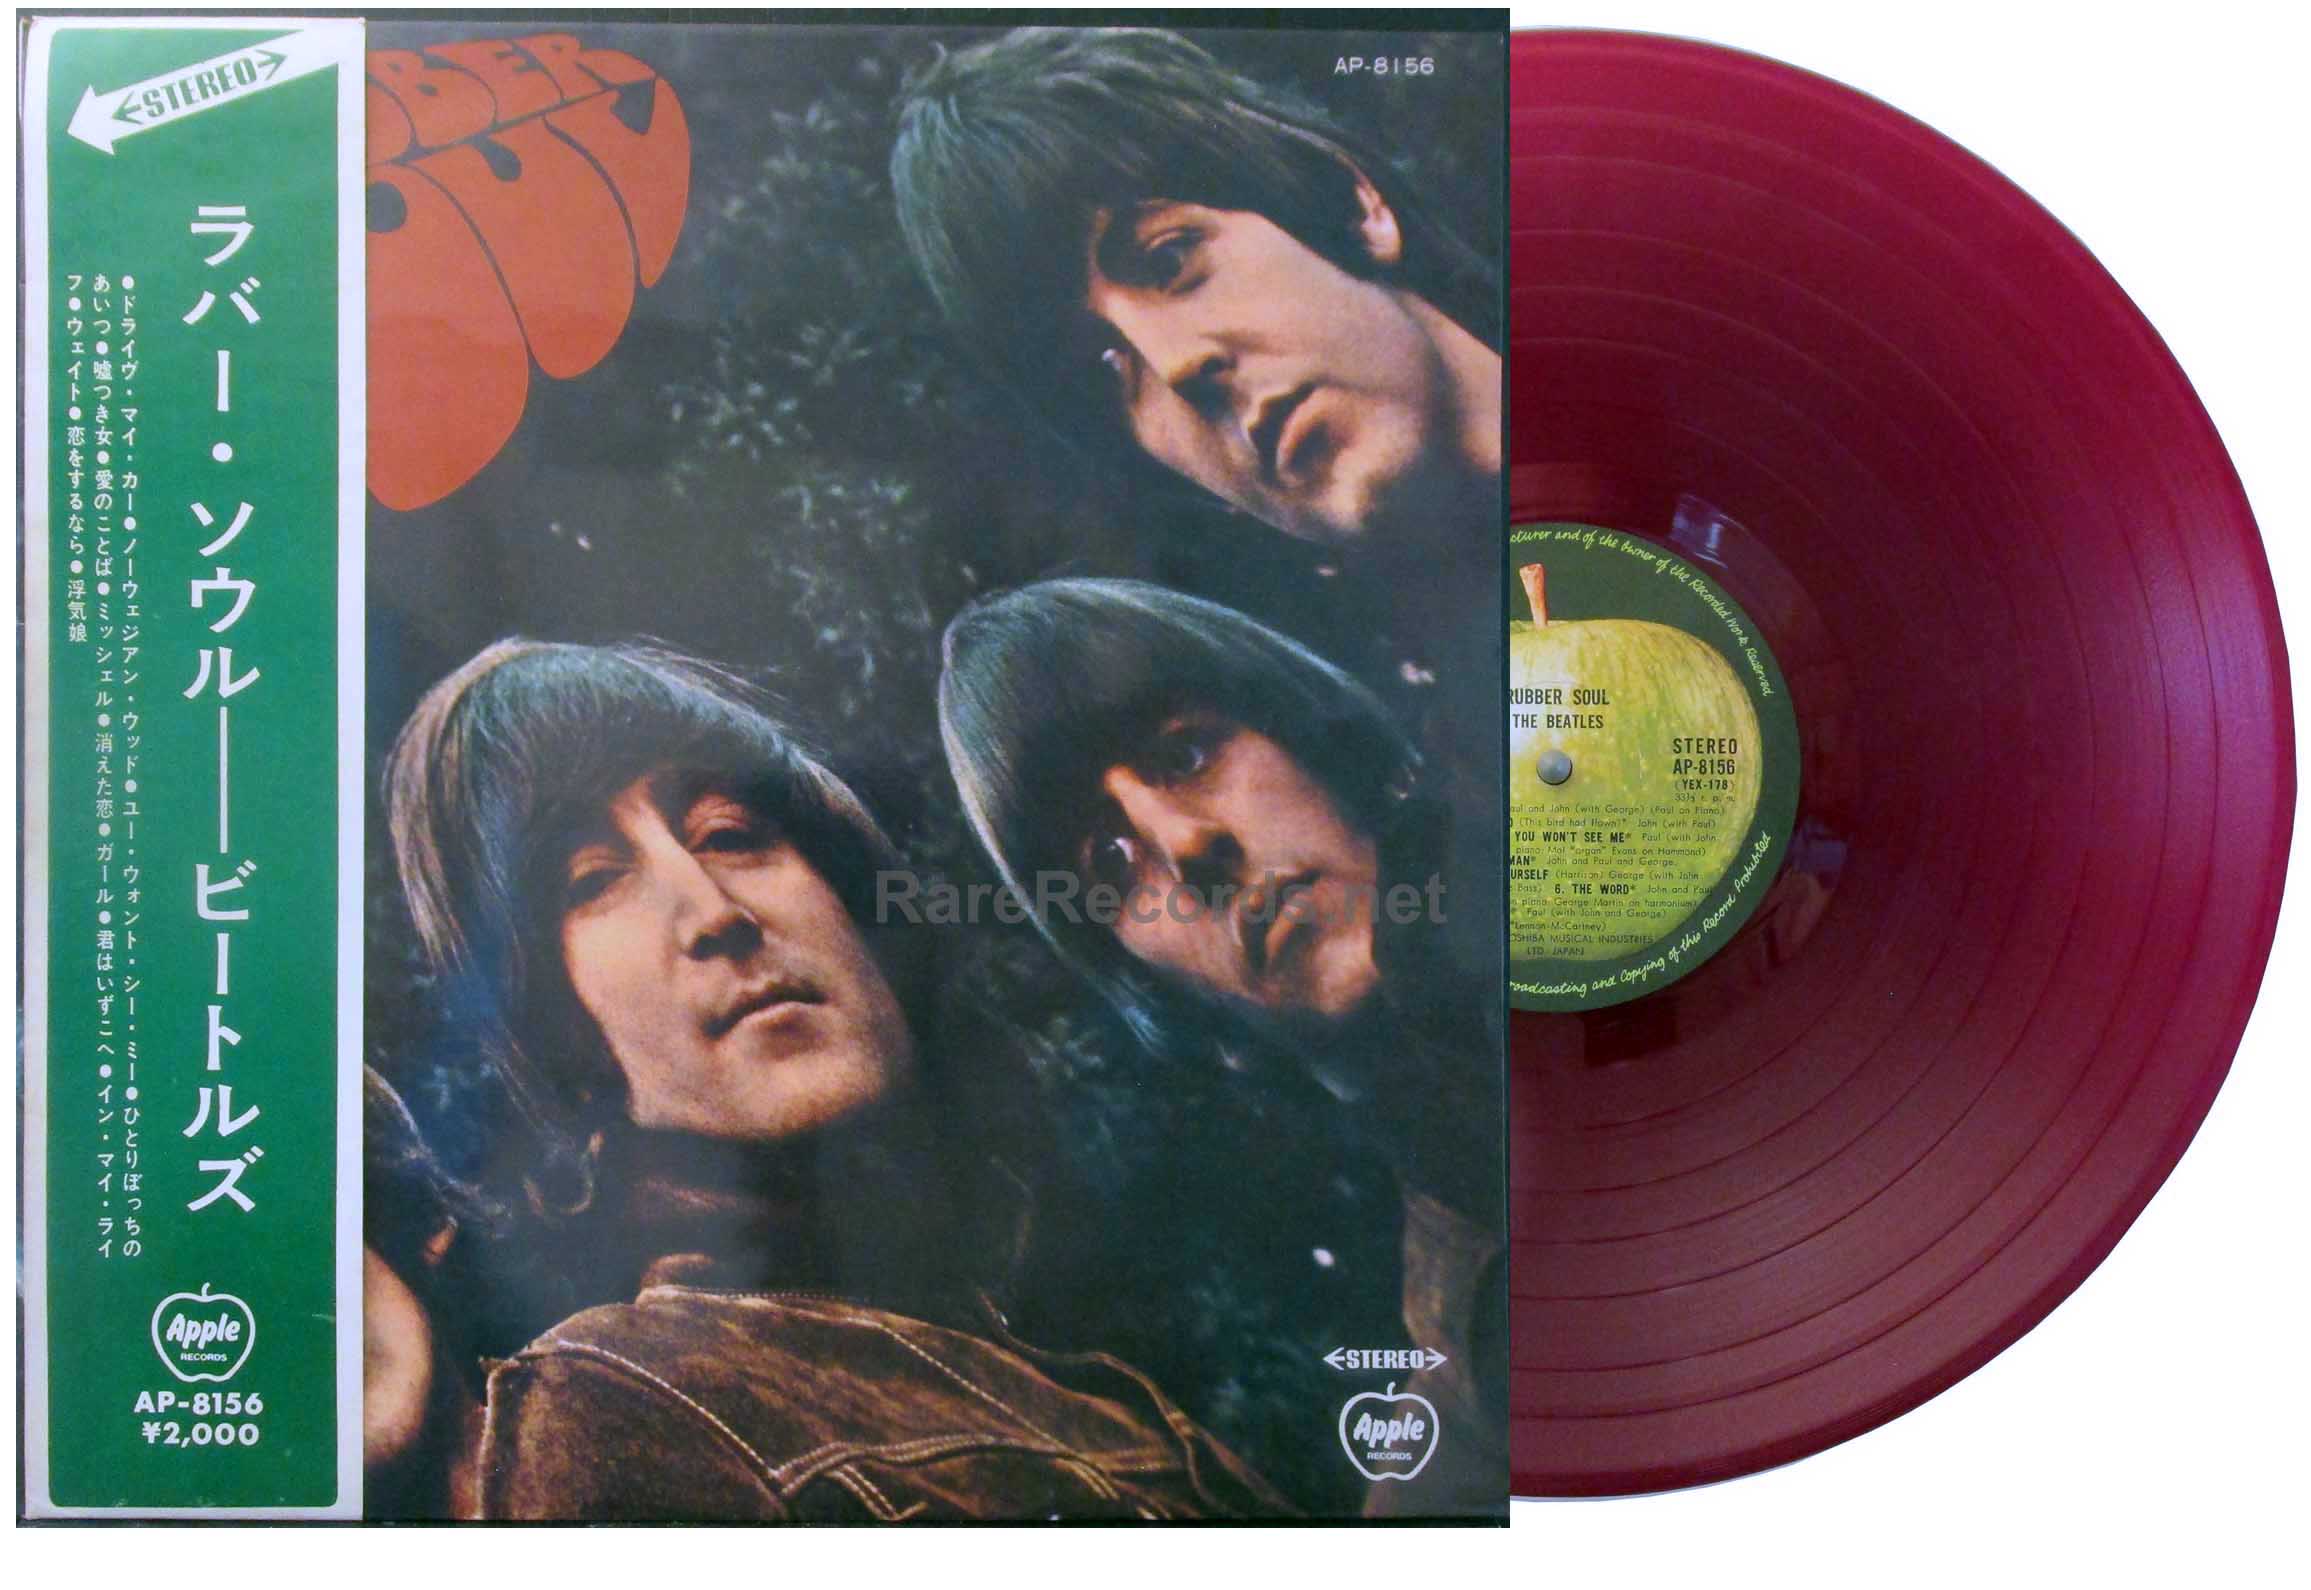 Formindske Start forsigtigt Beatles – Rubber Soul Japan red vinyl Apple LP with obi